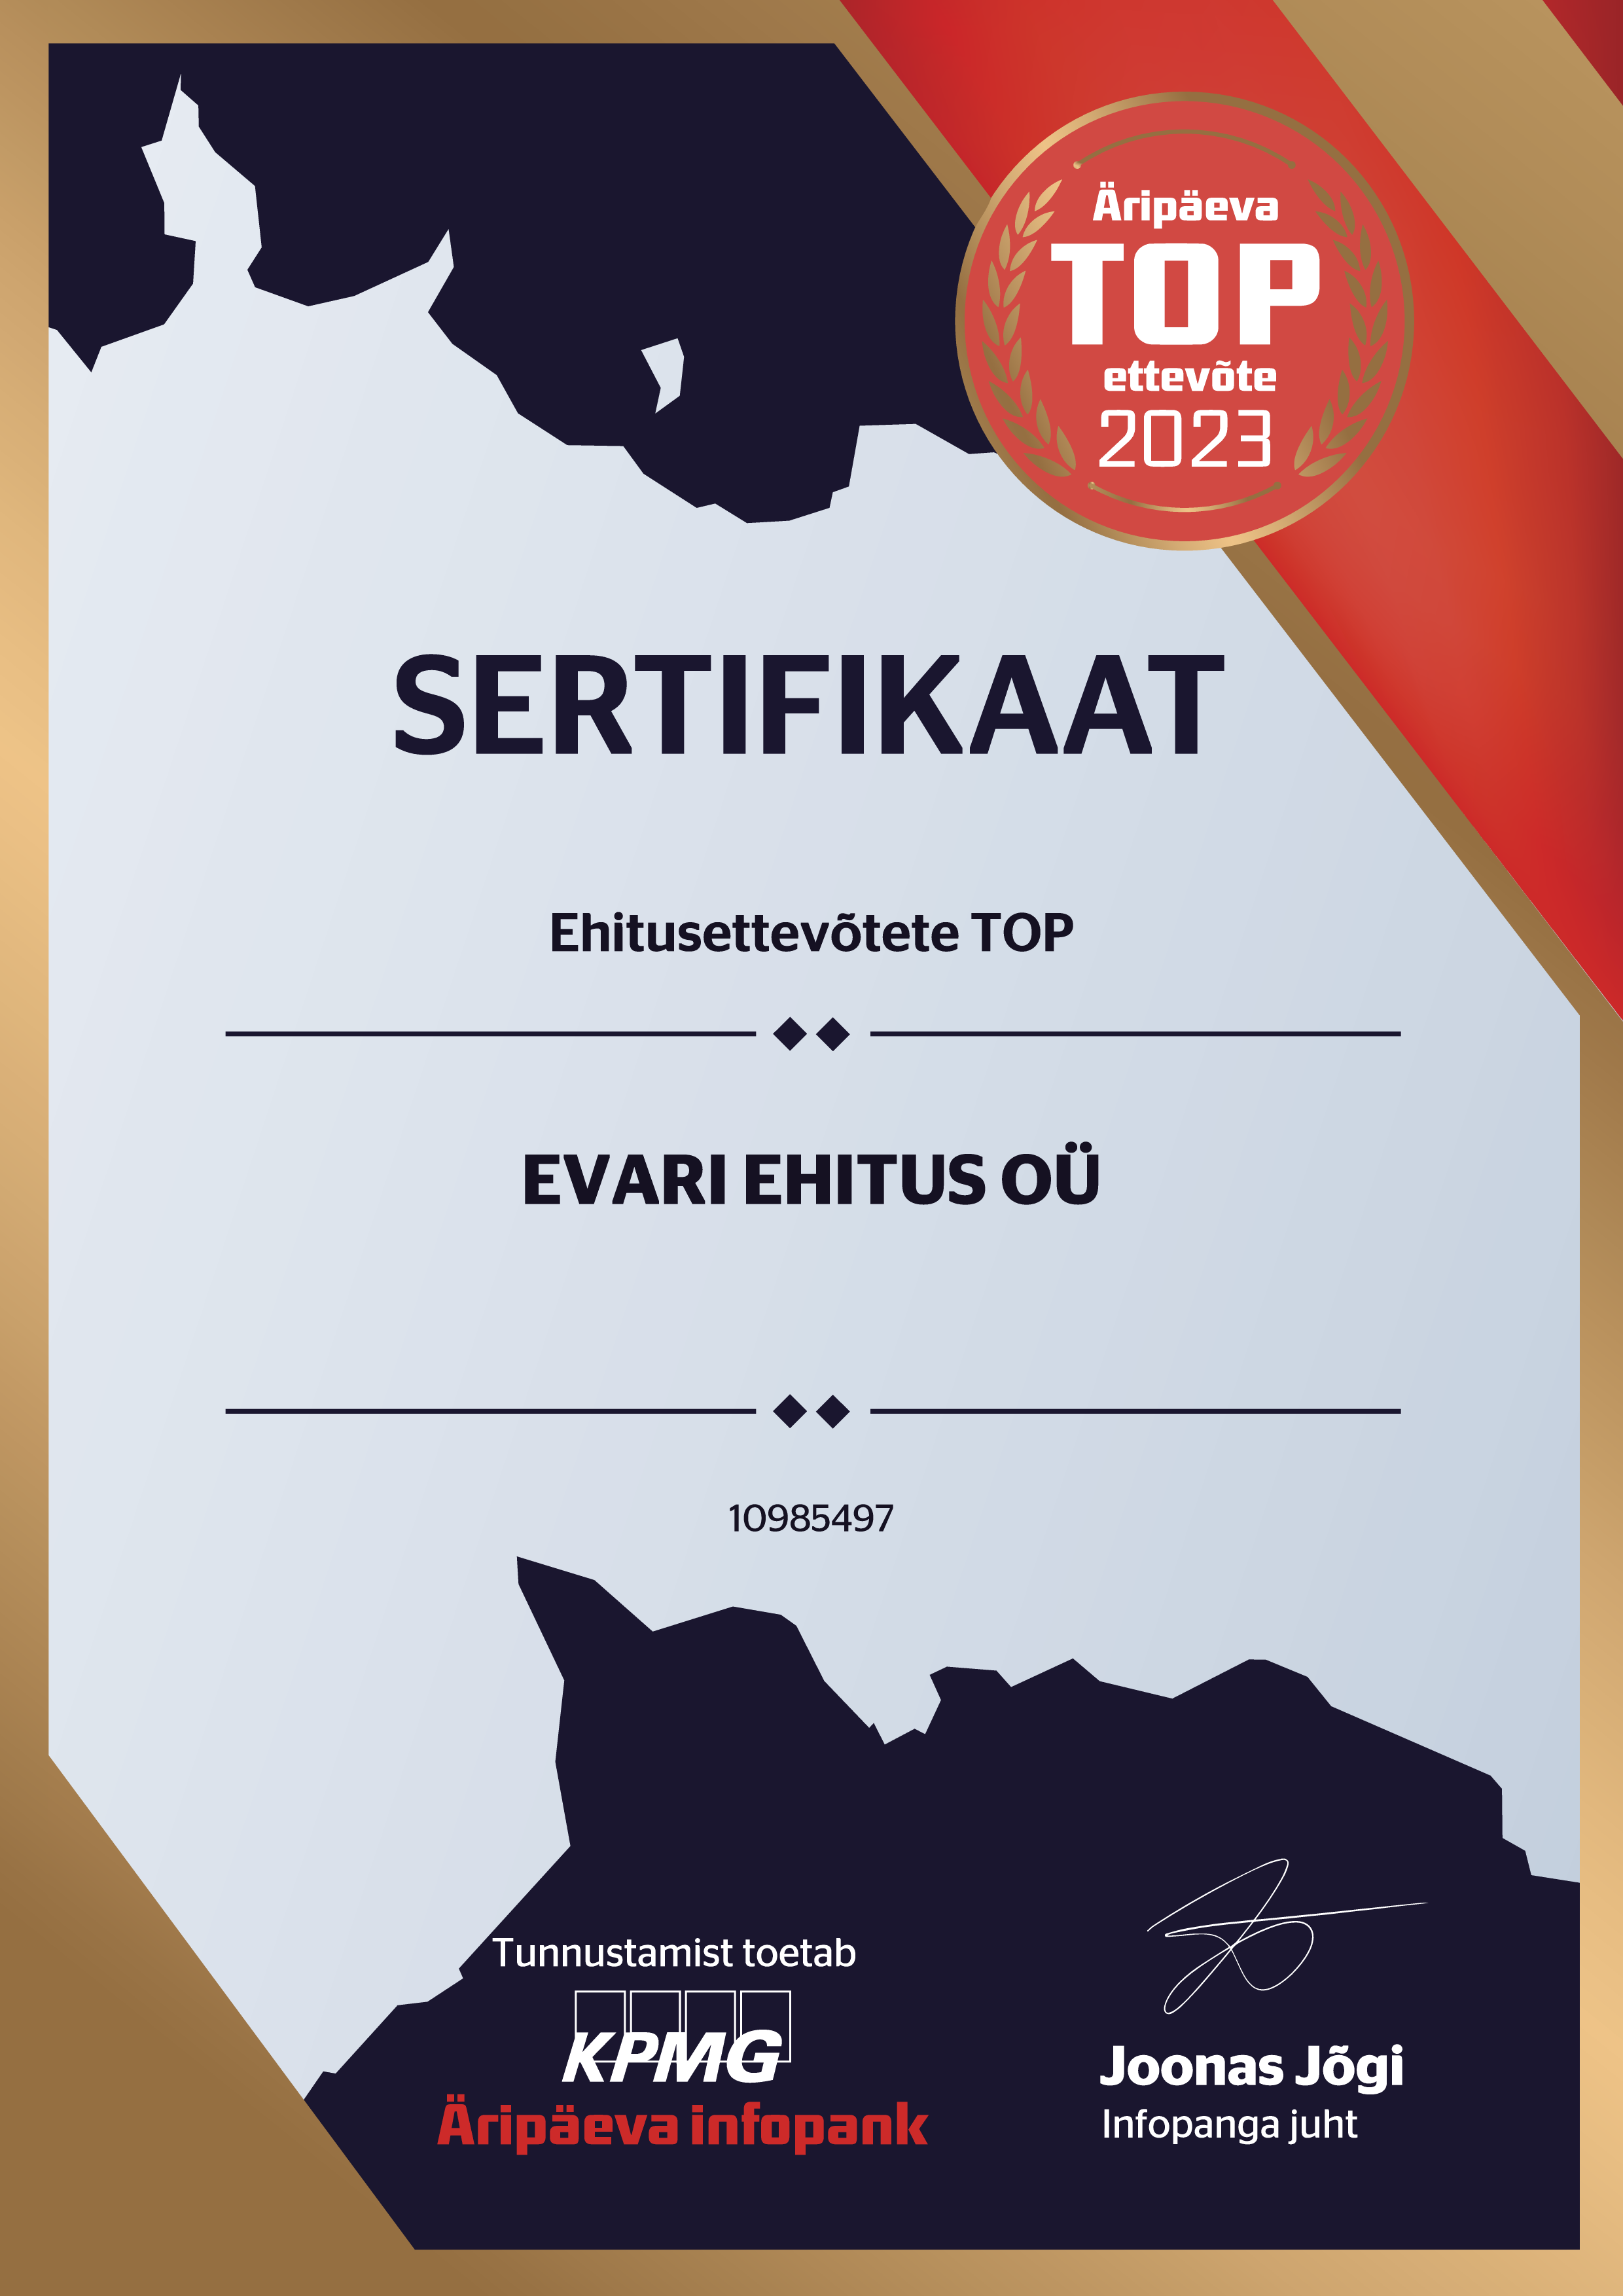 EVARI EHITUS OÜ - Ehitusettevõtete TOP